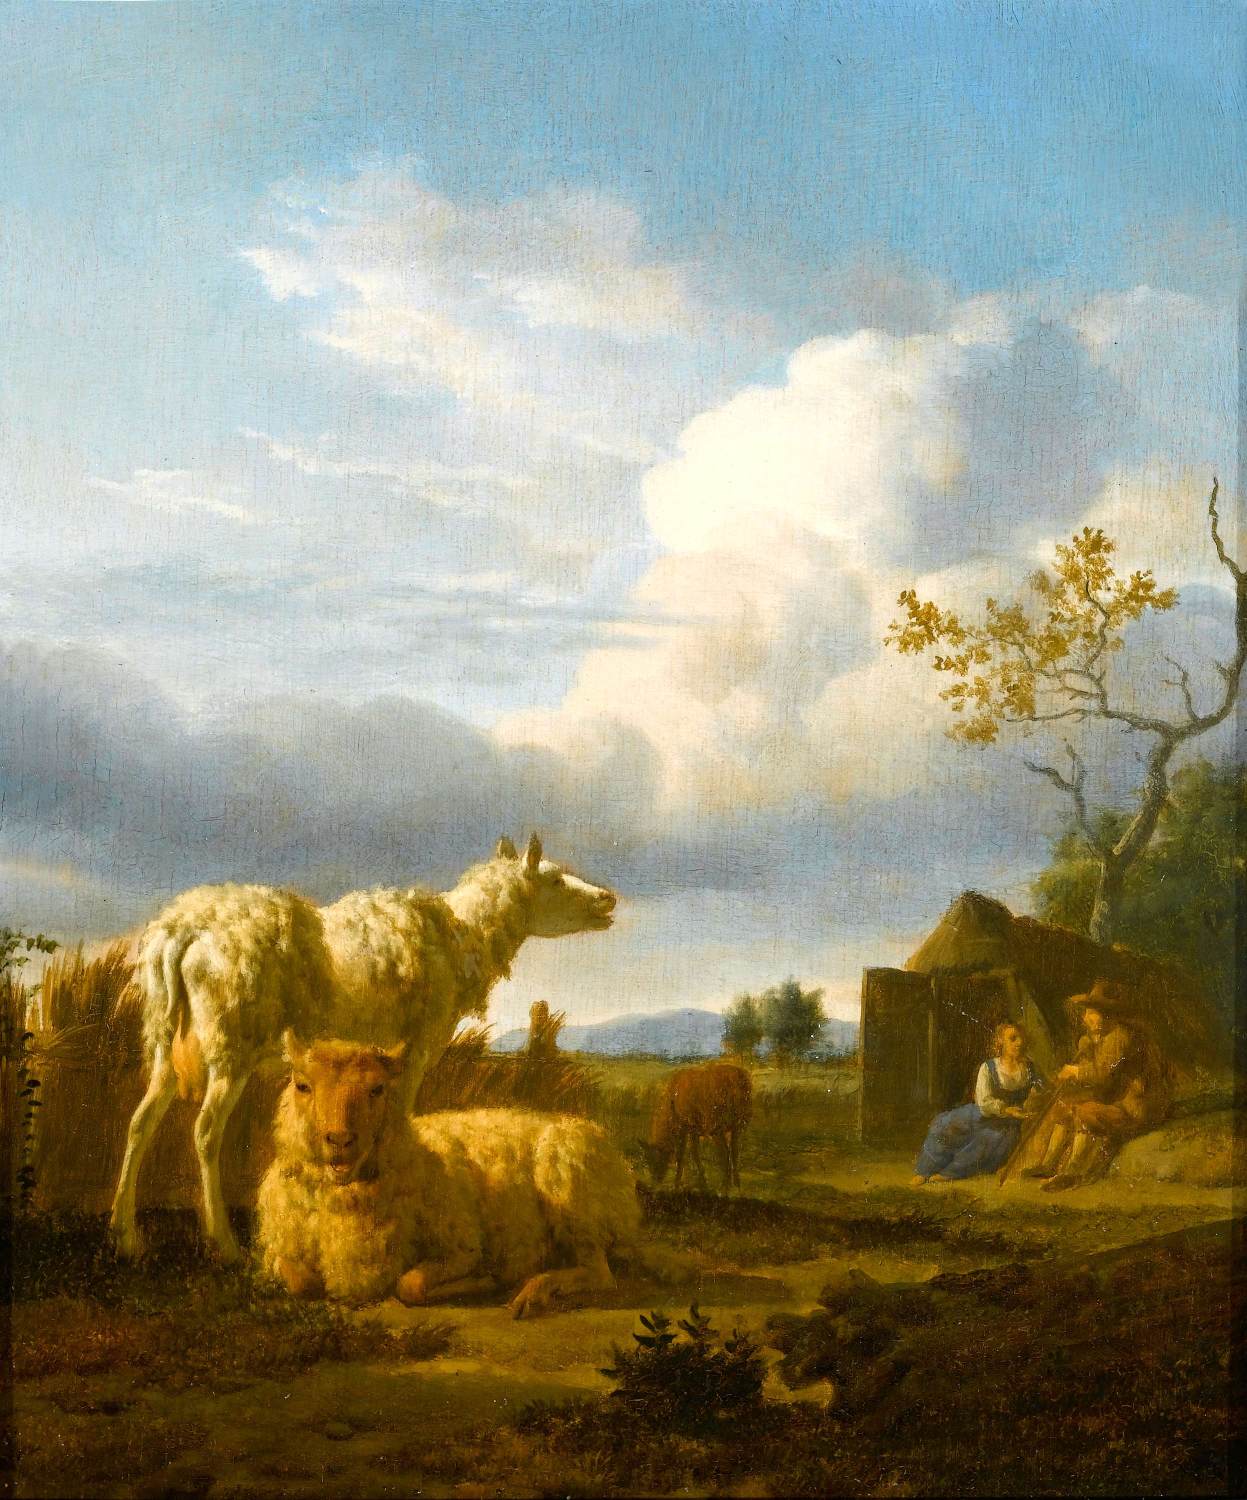 Pastoralt landskab med får og bønder